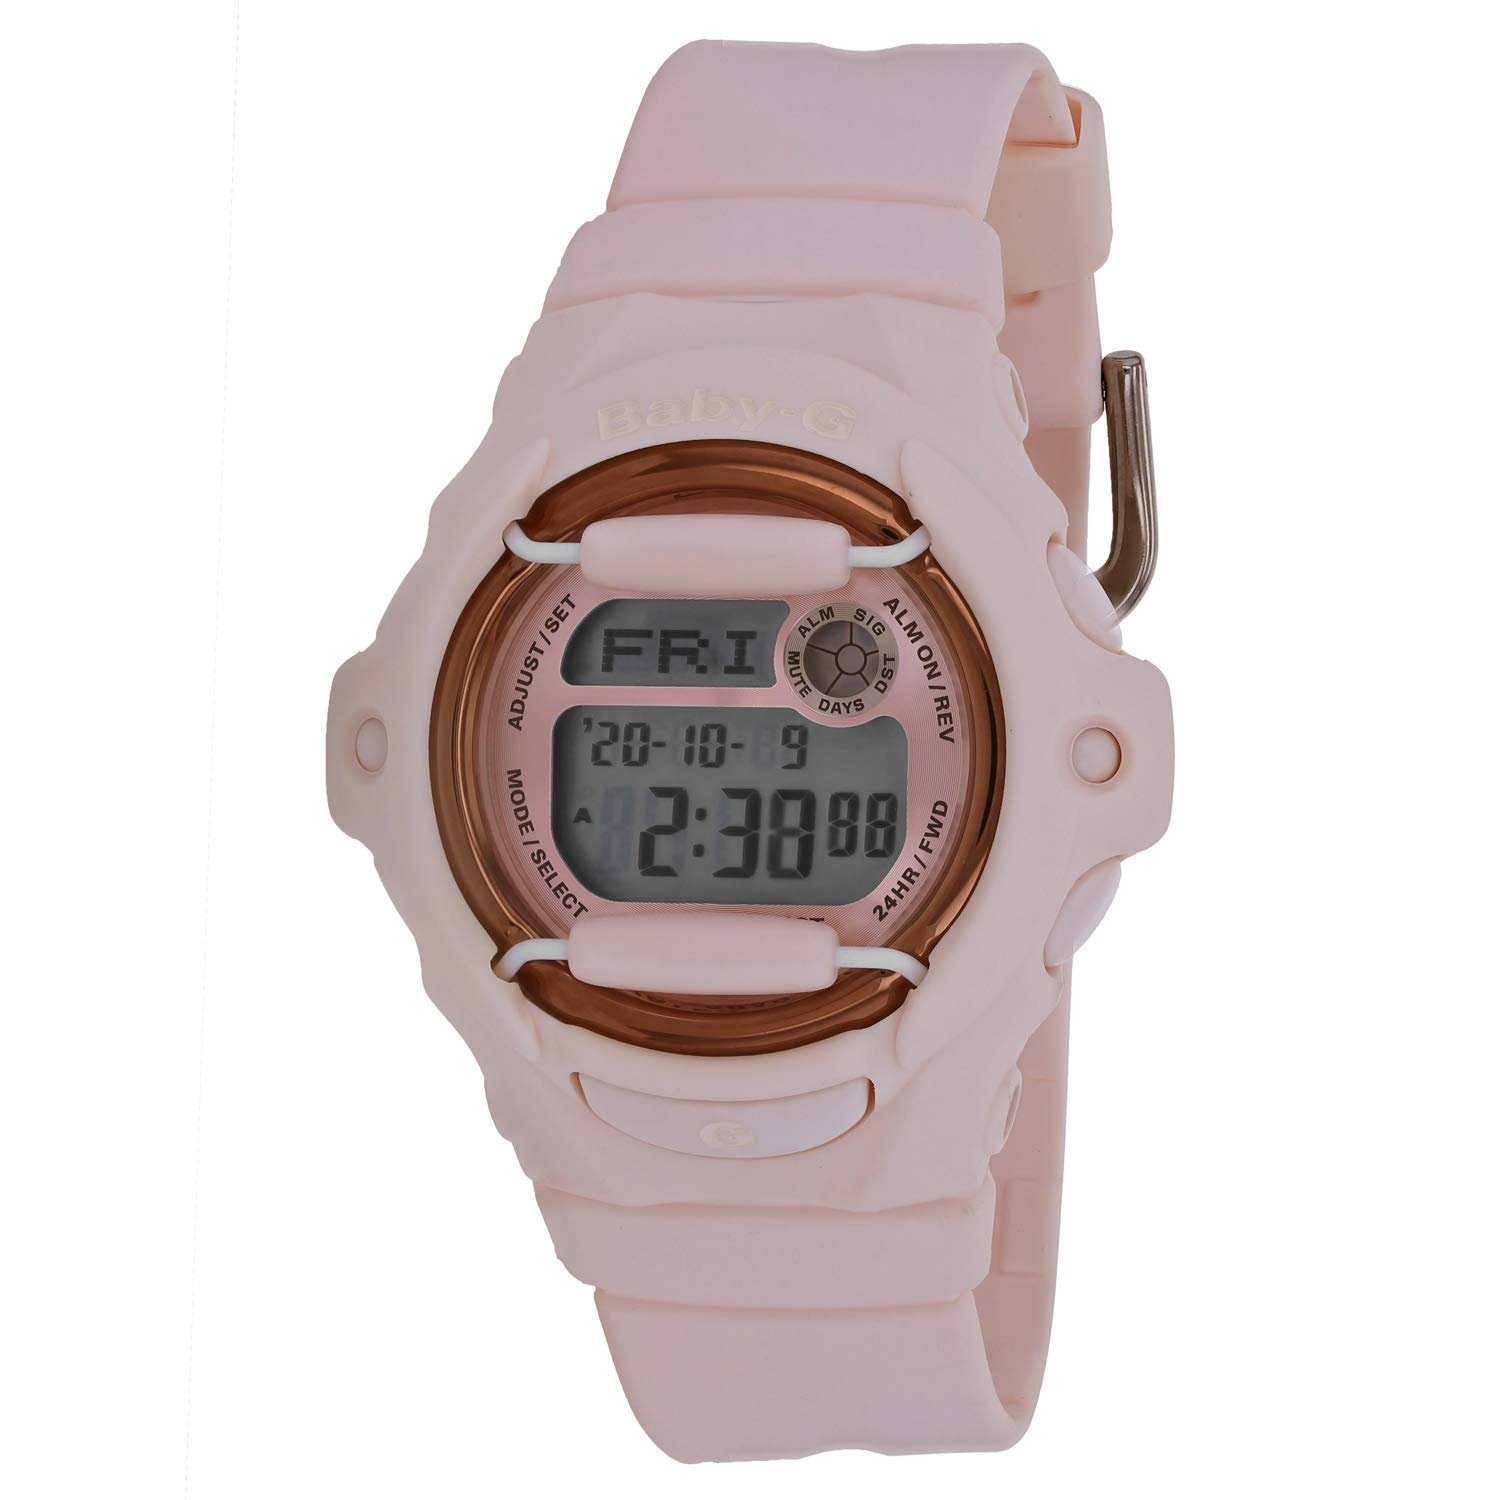 Casio G-Shock BG-169G Active Digital Watch